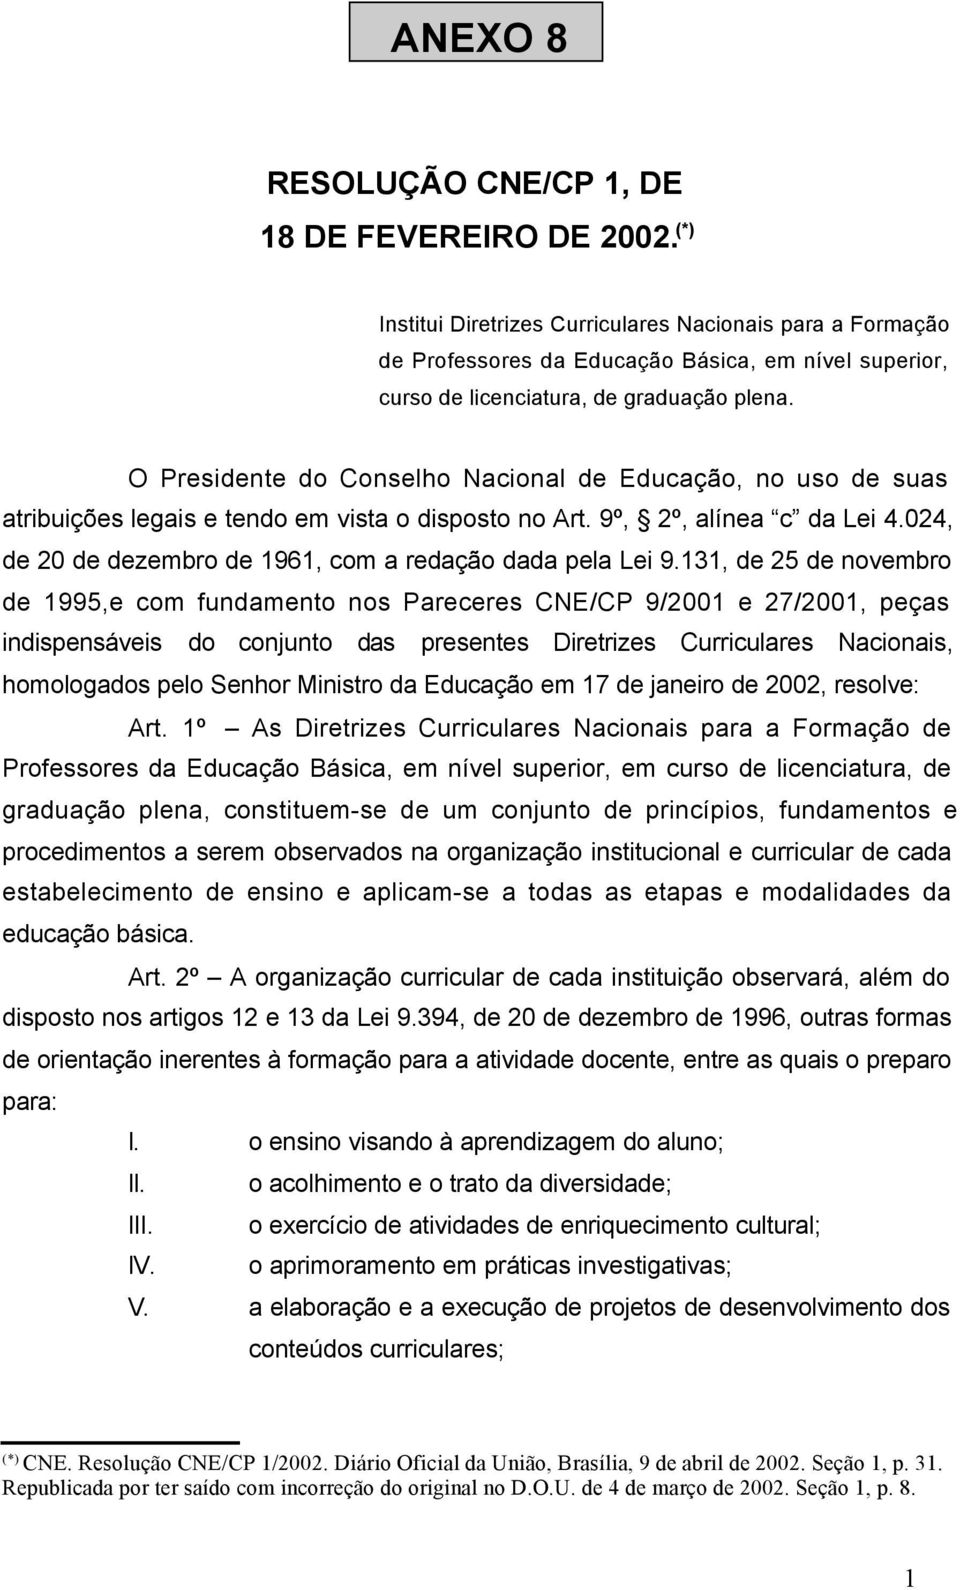 O Presidente do Conselho Nacional de Educação, no uso de suas atribuições legais e tendo em vista o disposto no Art. 9º, 2º, alínea c da Lei 4.